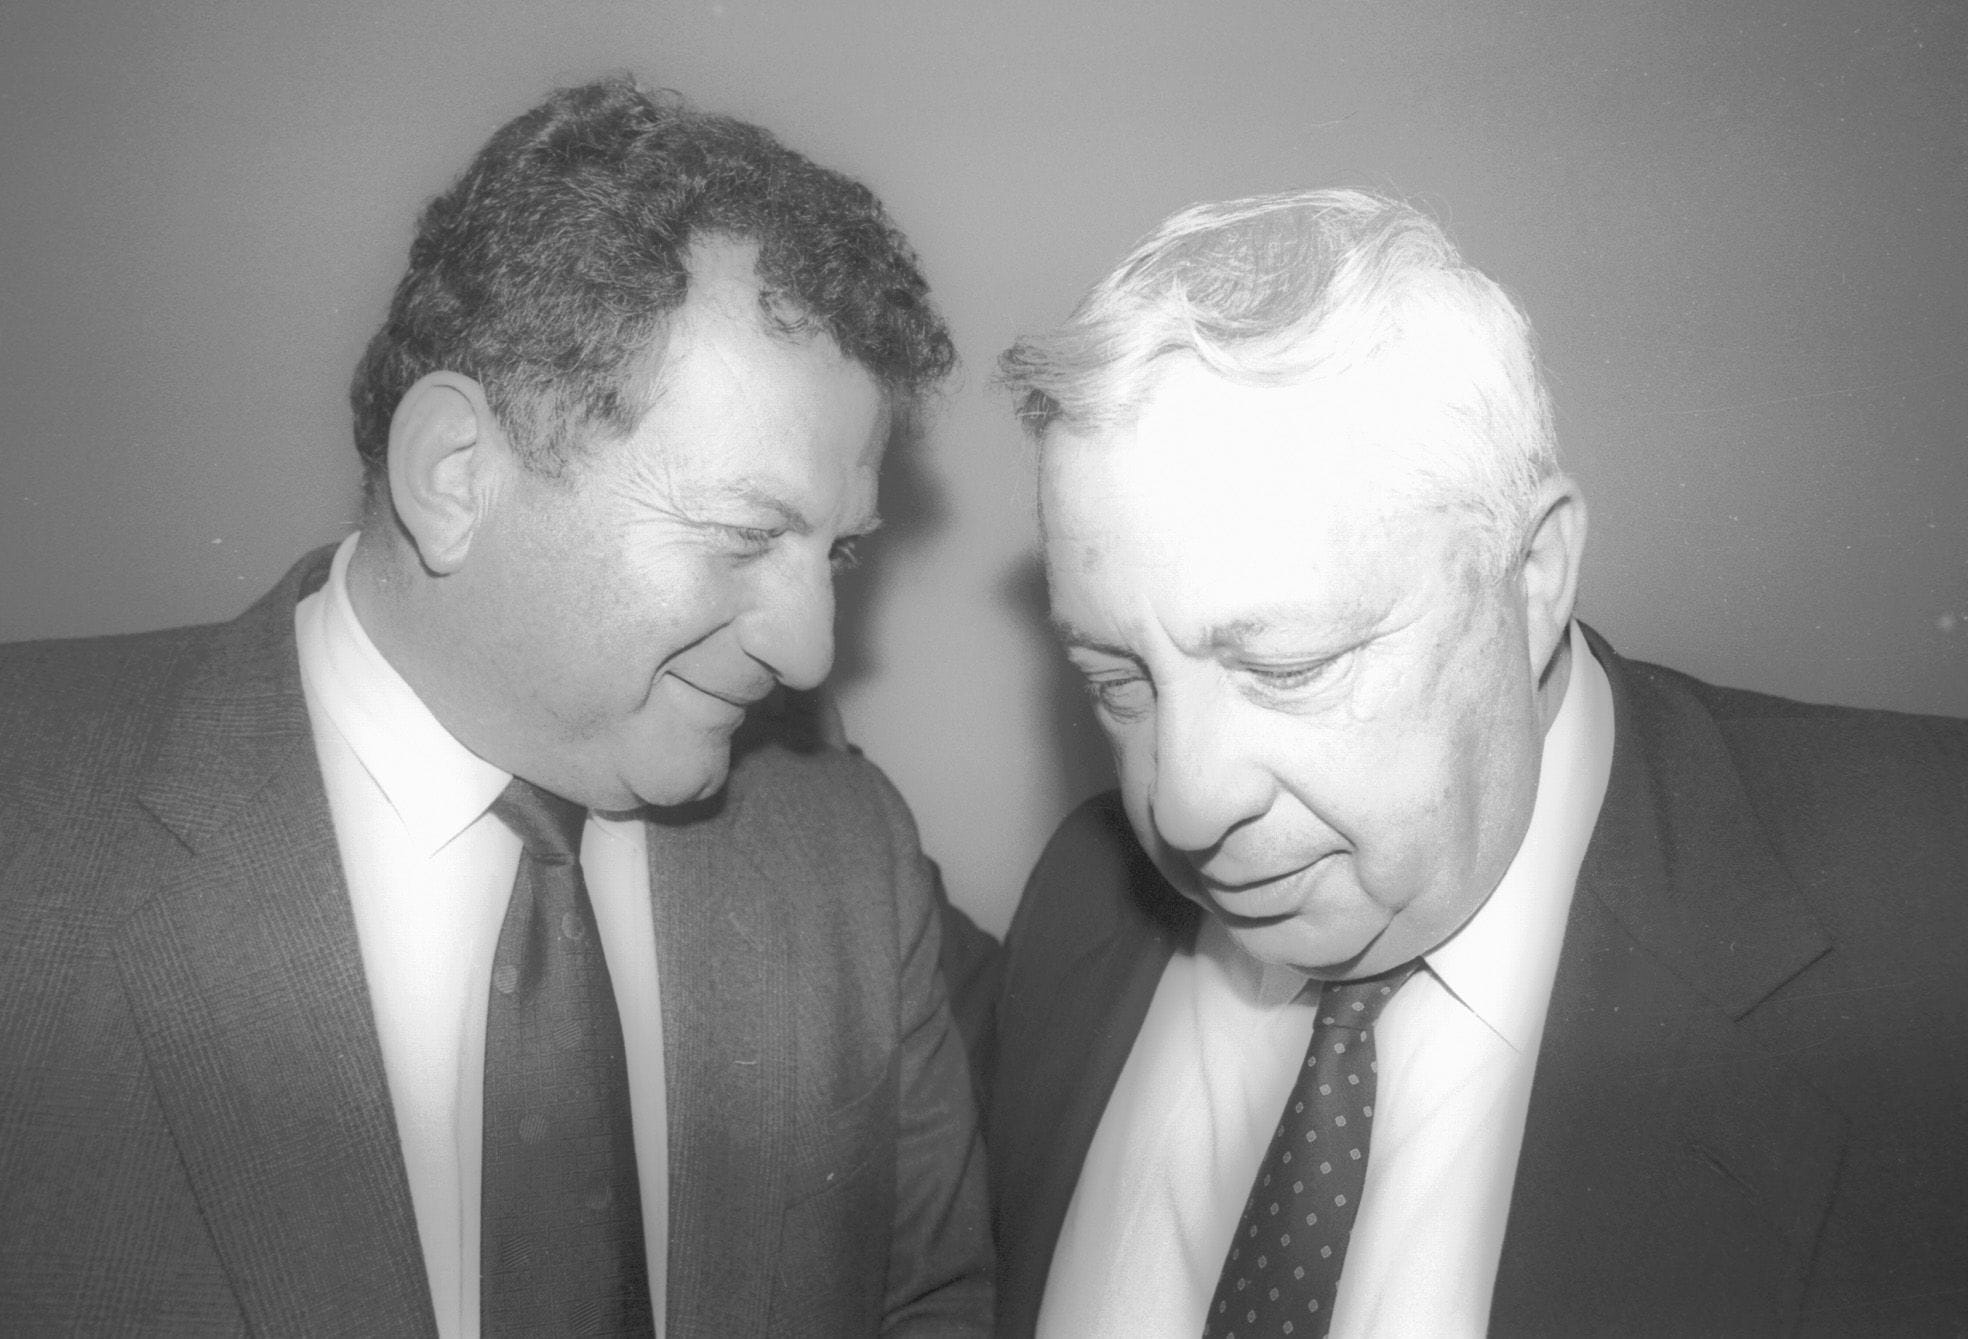 אריאל שרון ואלי לנדאו ב-1987 (צילום: שאול רחמים, ארכיון דן הדני, הספרייה הלאומית)